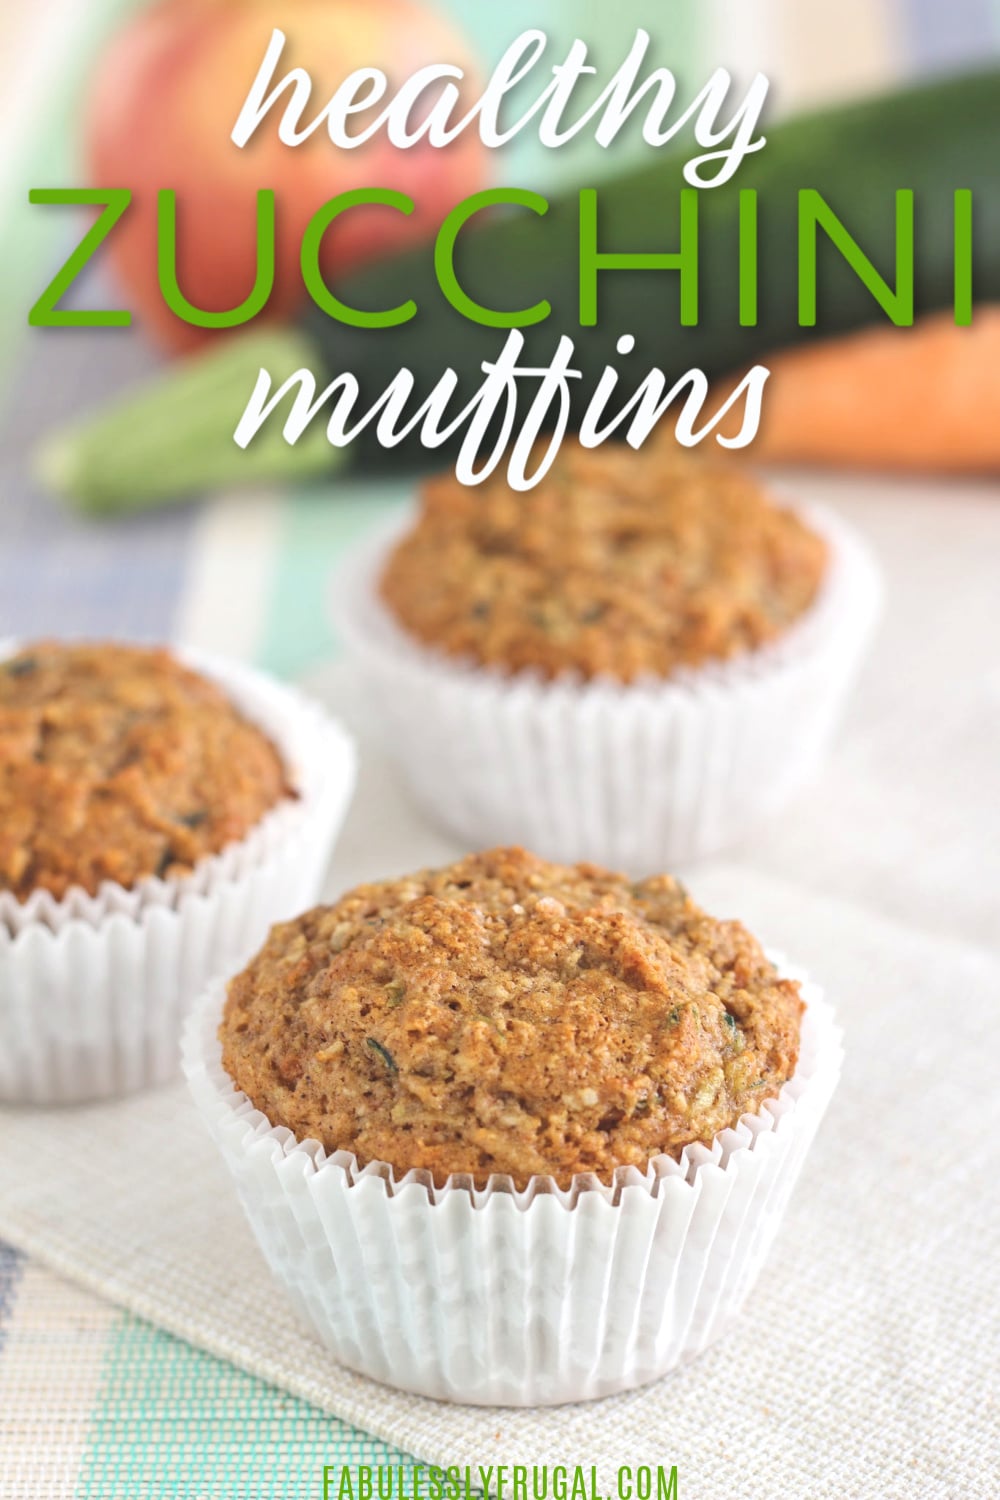 Healthy zucchini muffins recipe